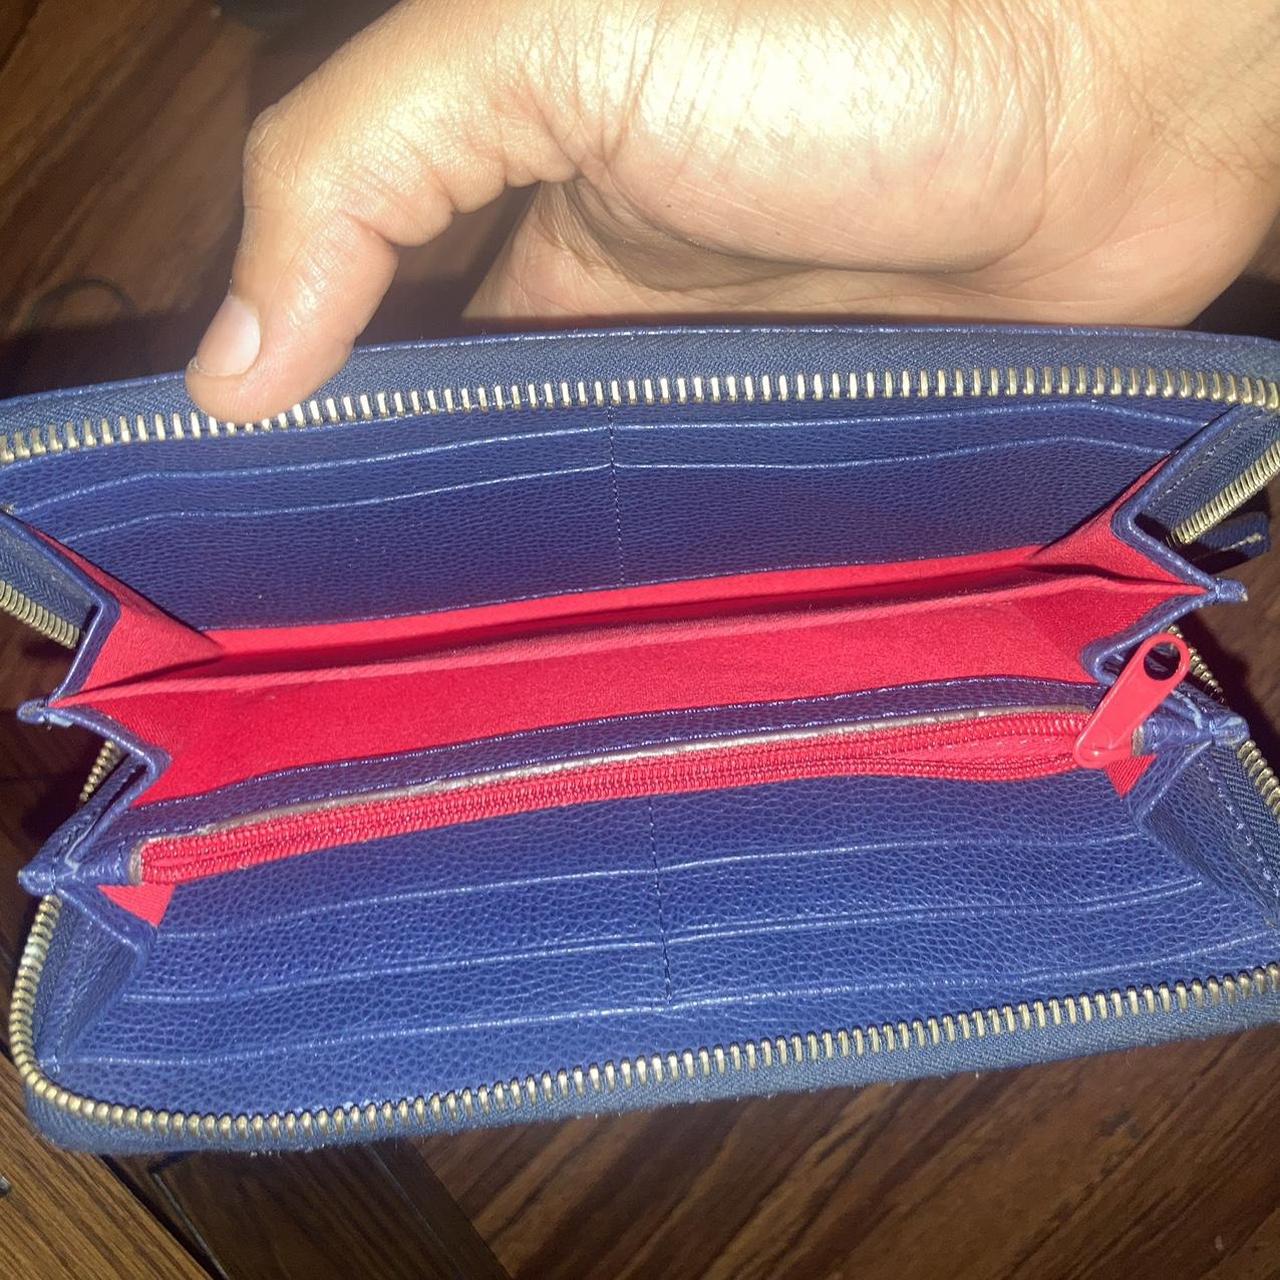 Dooney & Bourke Cardinals wallet in great condition - Depop